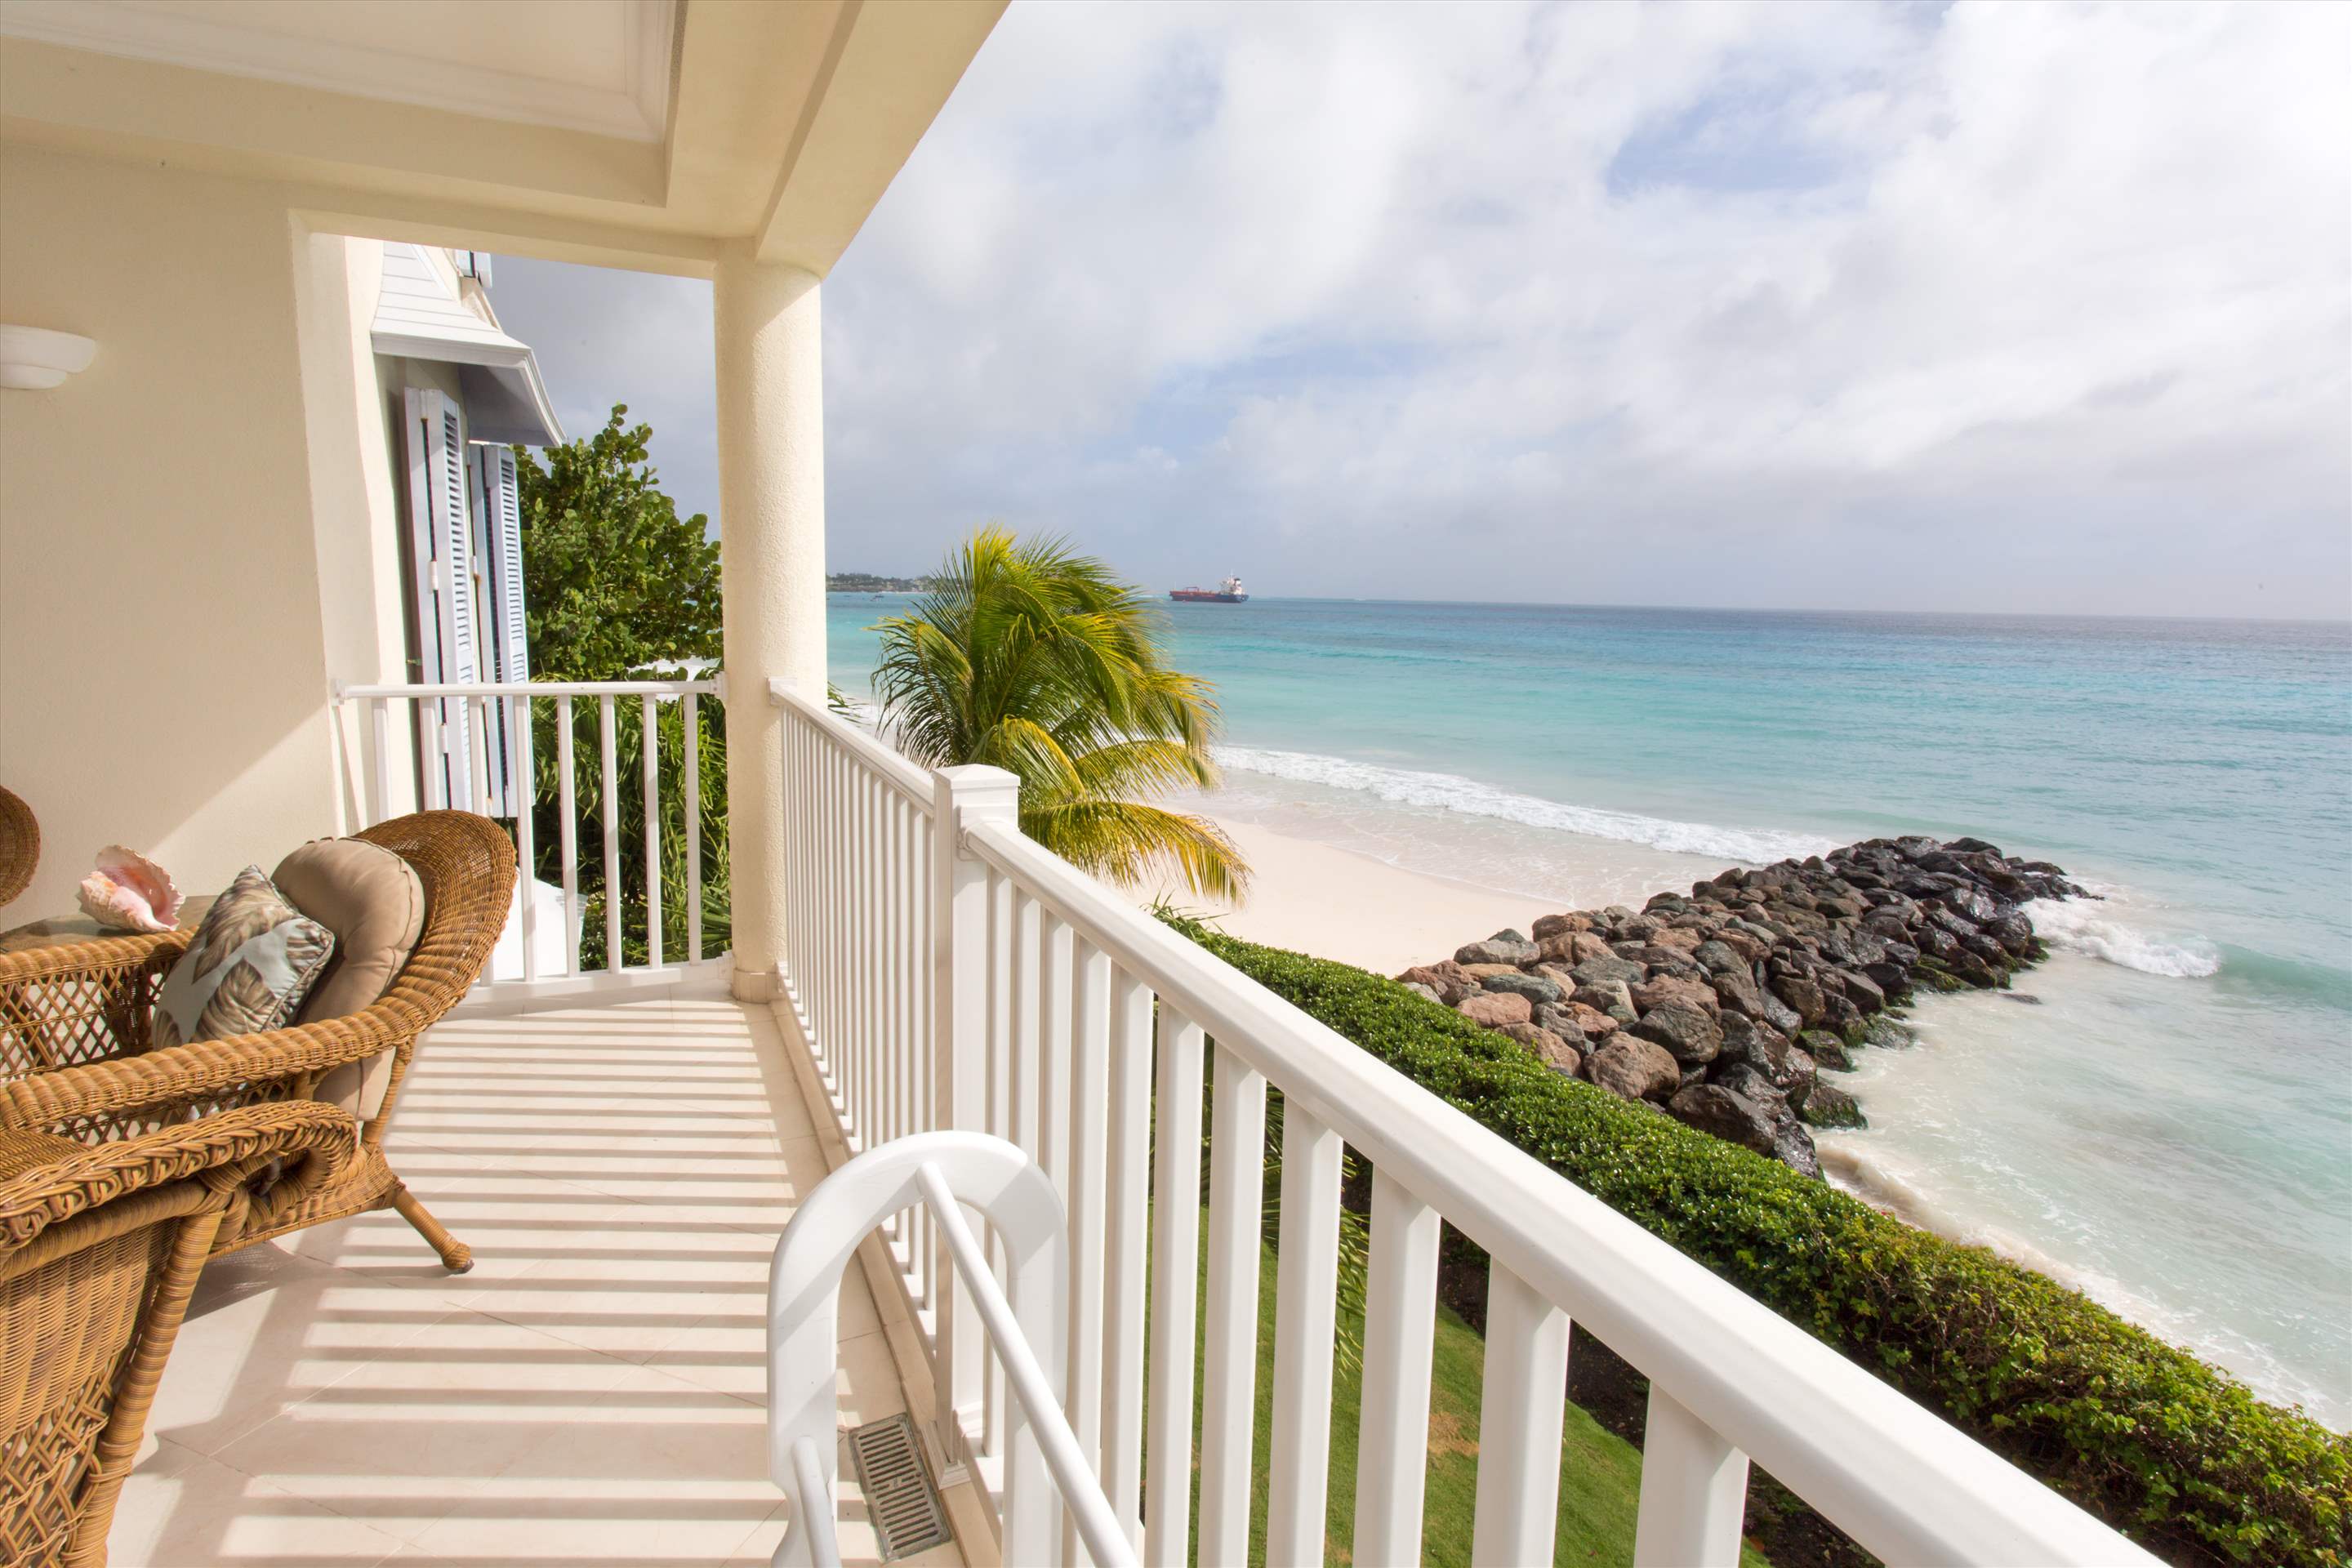 Sandy Hook 21, 3 bedroom, 3 bedroom villa in St. Lawrence Gap & South Coast, Barbados